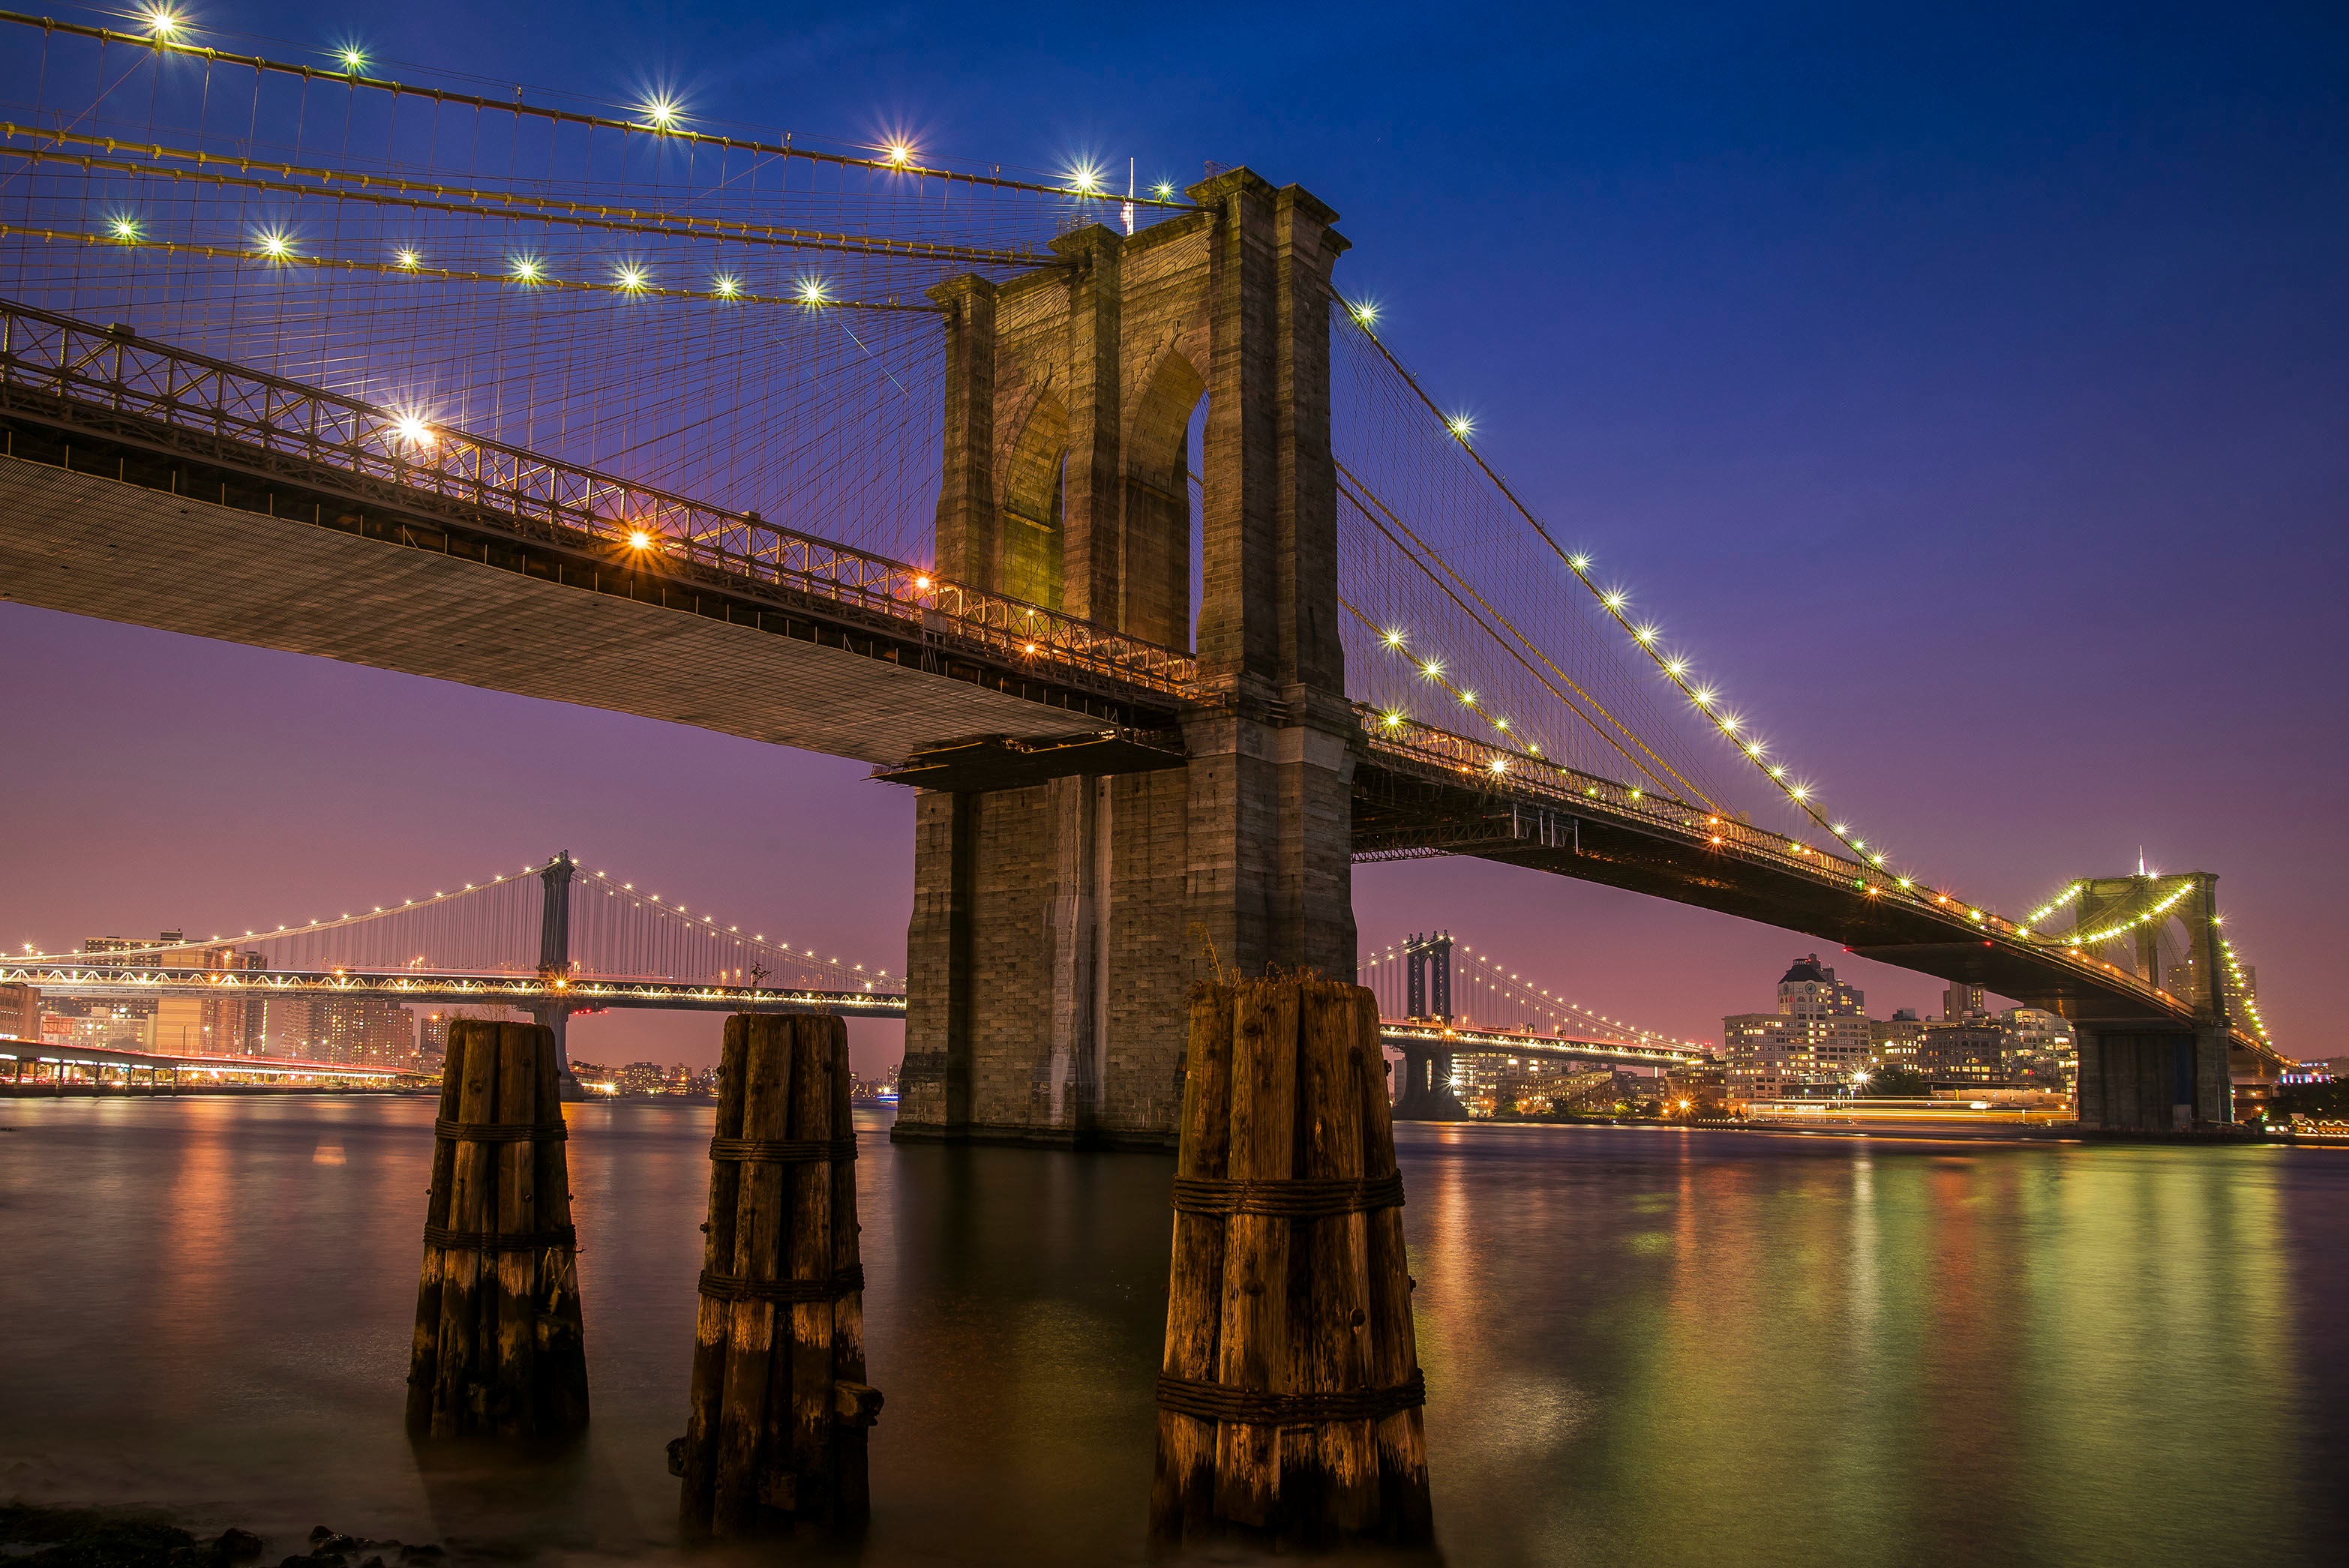 Бесплатное фото Подвесной мост ночью с подсветкой